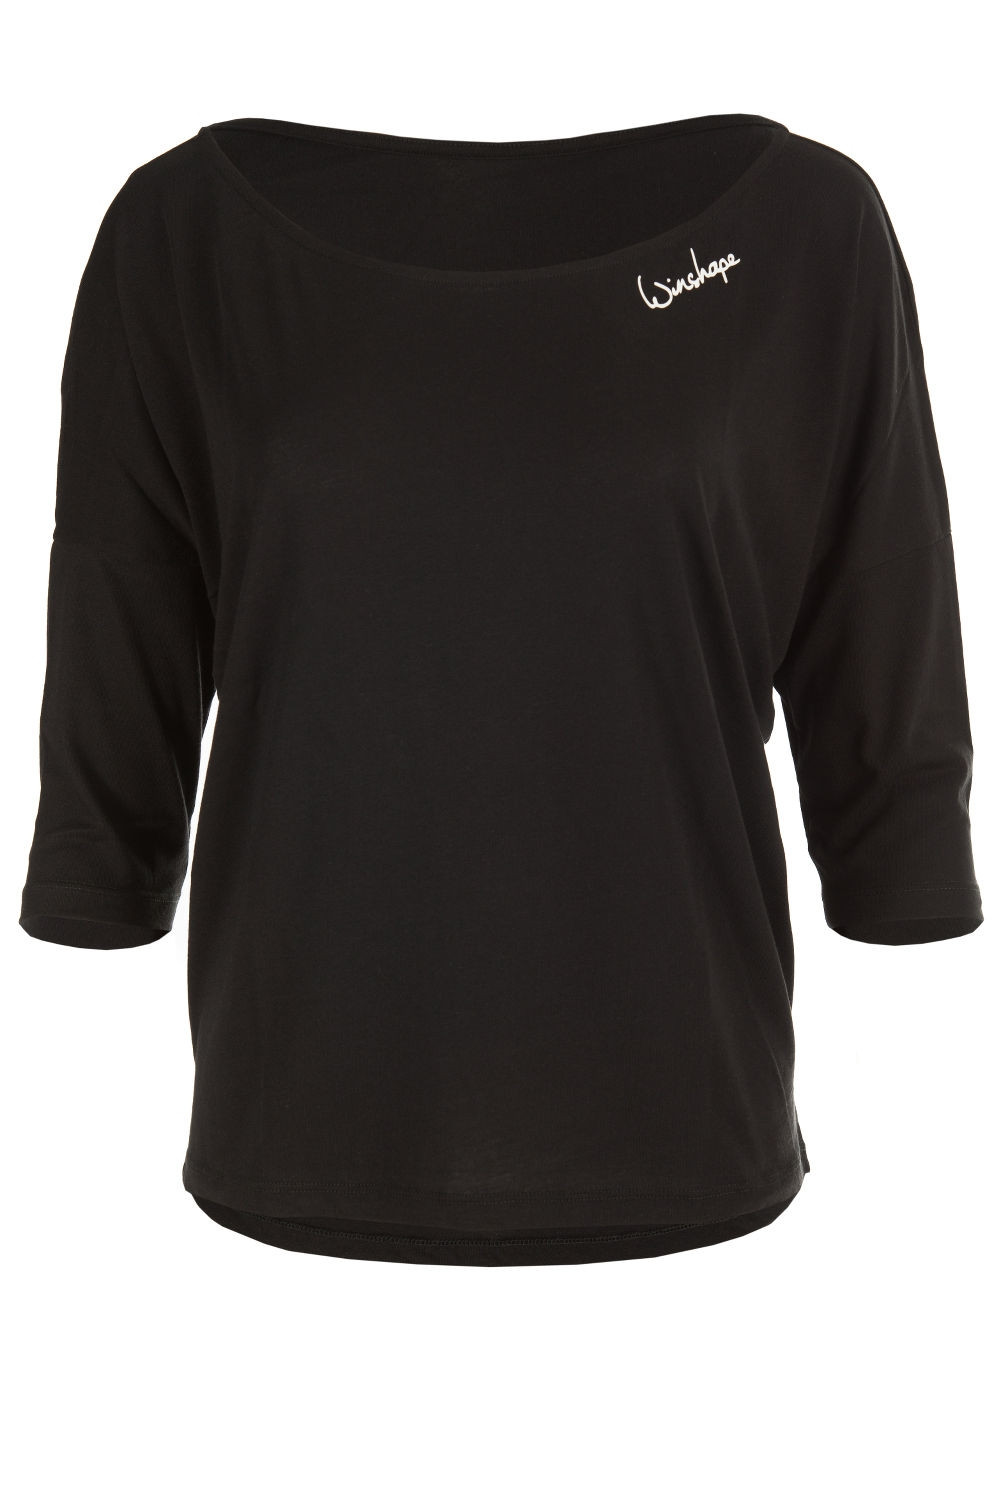 Ultra leichtes Modal-3/4-Arm Shirt MCS001, schwarz, Winshape Dance Style